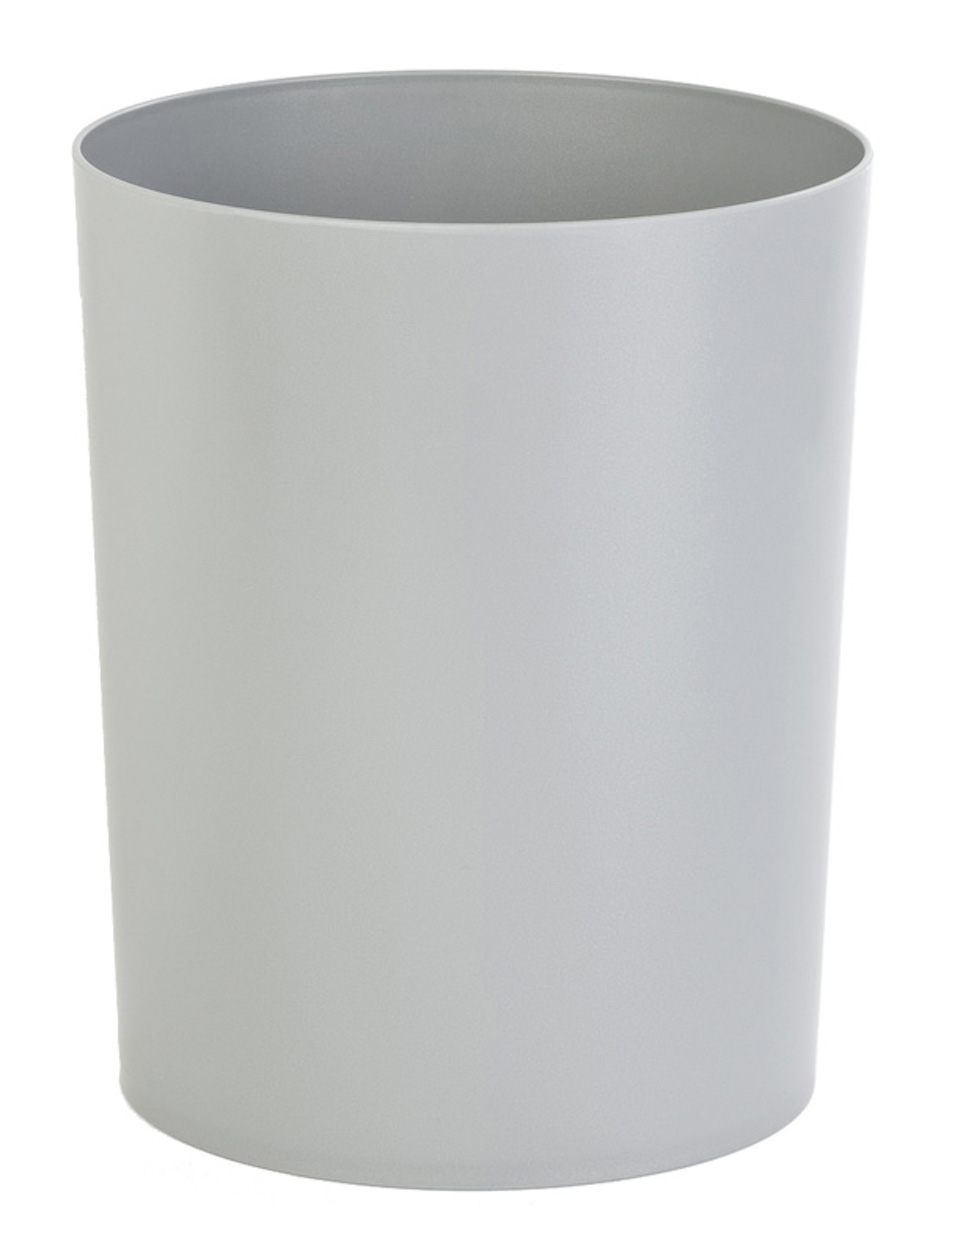 Runder feuerfester Papierkorb & Abfallsammler aus Kunststoff | 13 Liter, HxØ 29,5x23,5cm | Grau